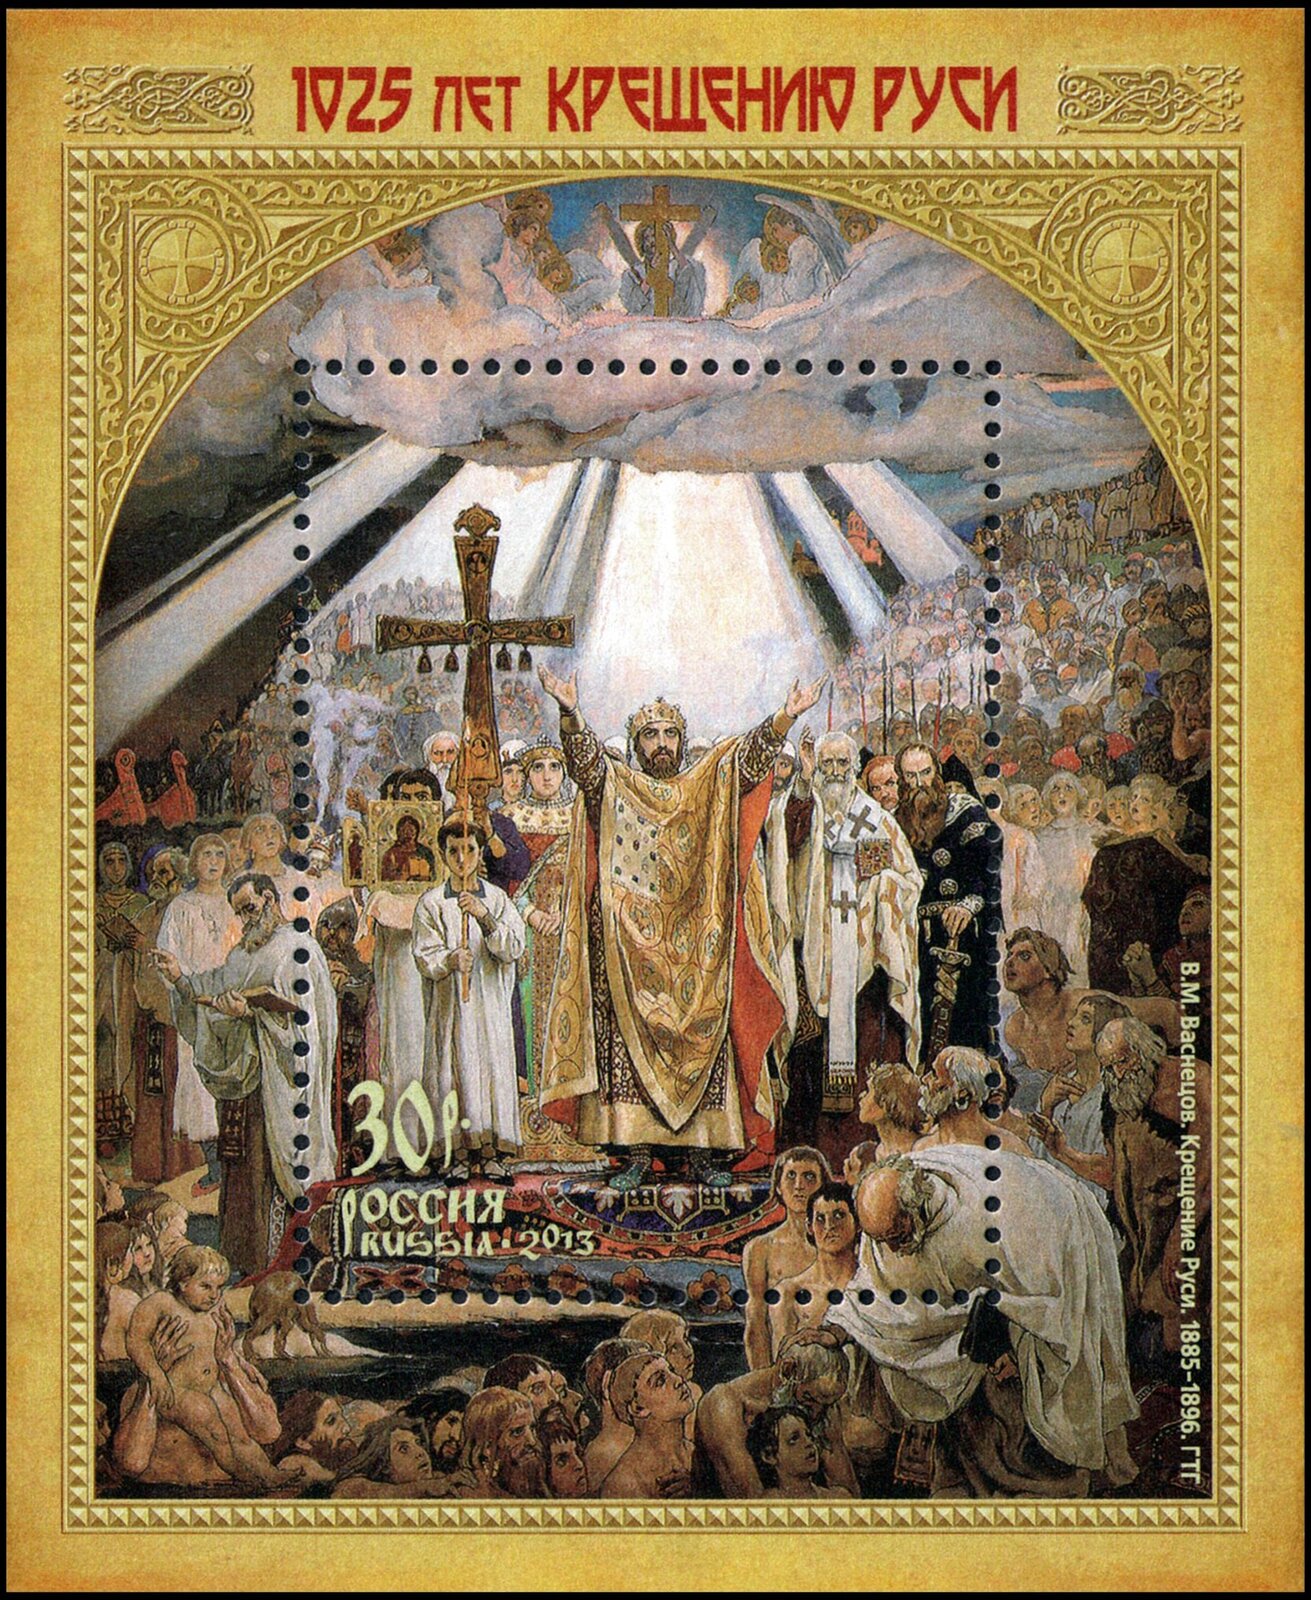 Ilustracja przedstawiająca Rosyjski znaczek pocztowy wydrukowany w rocznicę rosyjskiej chrystianizacji, obecnie część prywatnej kolekcji. Na znaczku liczna grupa osób prowadzona przez władcę z koroną na głowie i biskupów, nad nimi chmura, z której spogląda w dół Chrystus i aniołowie.